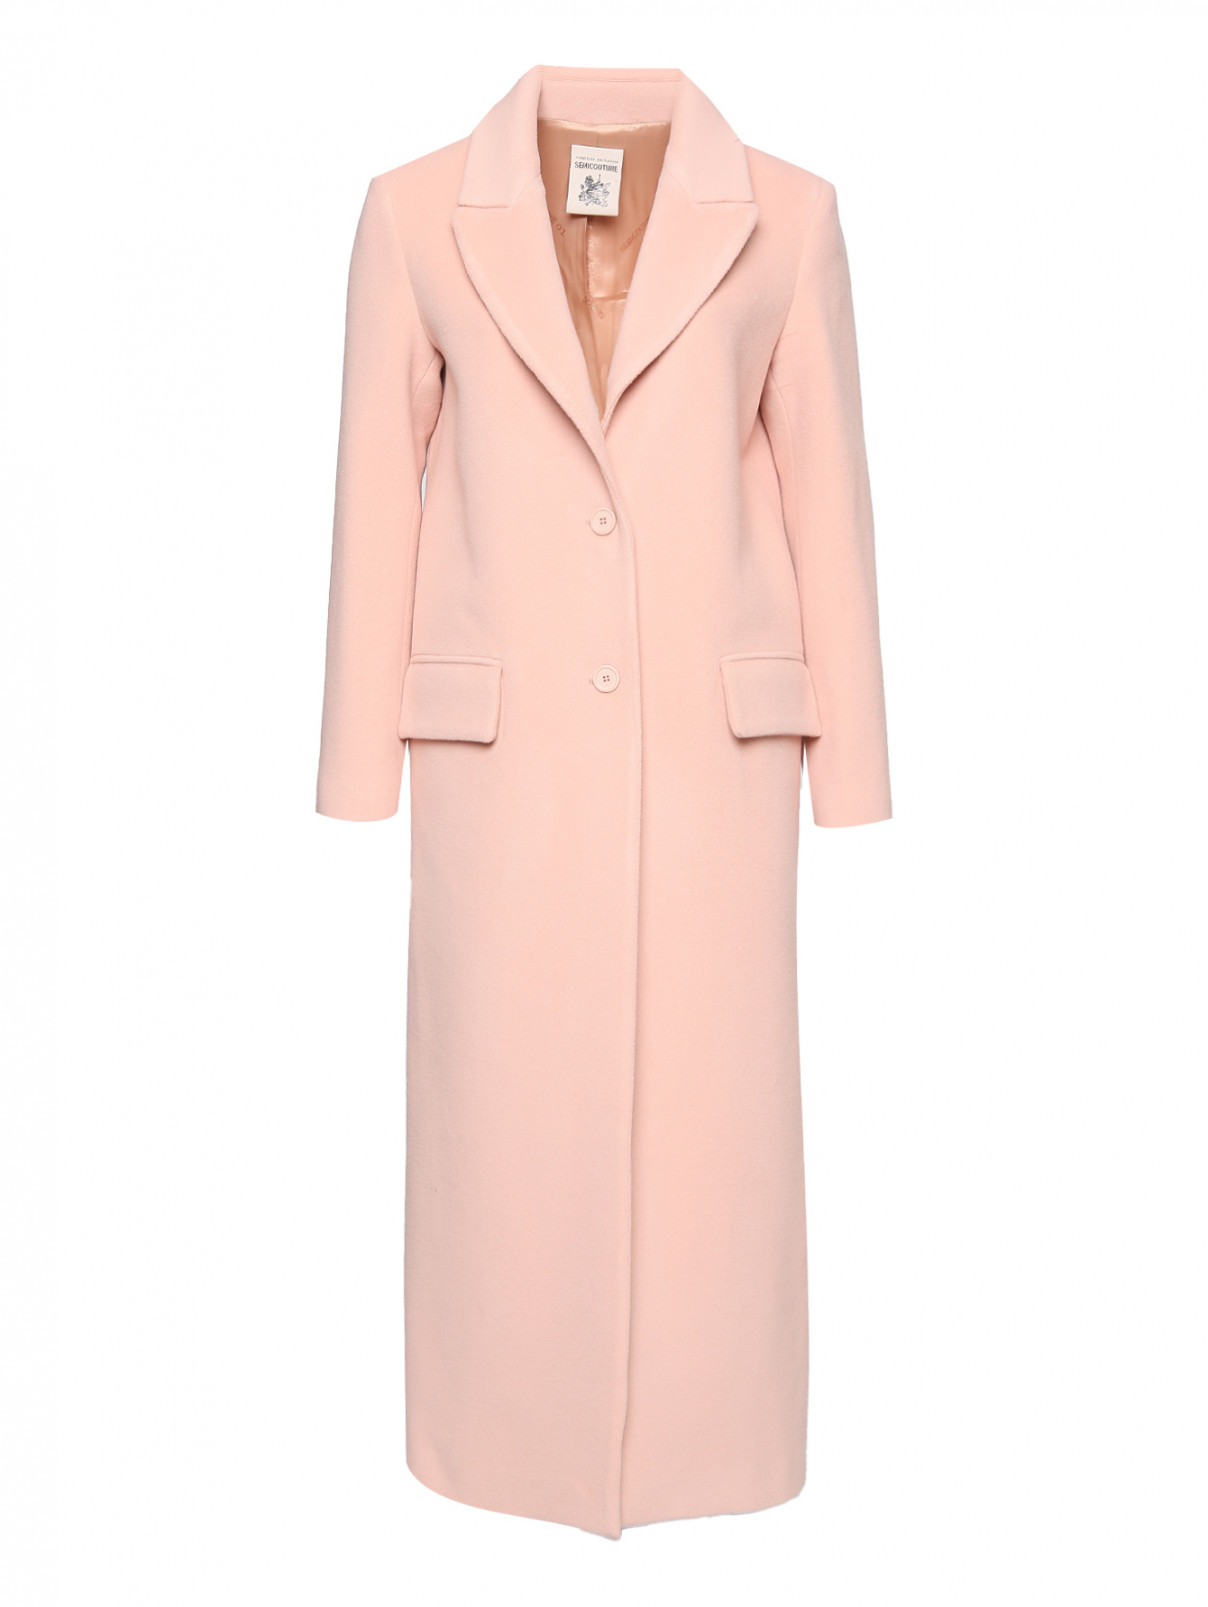 Пальто из шерсти с карманами Semicouture  –  Общий вид  – Цвет:  Розовый